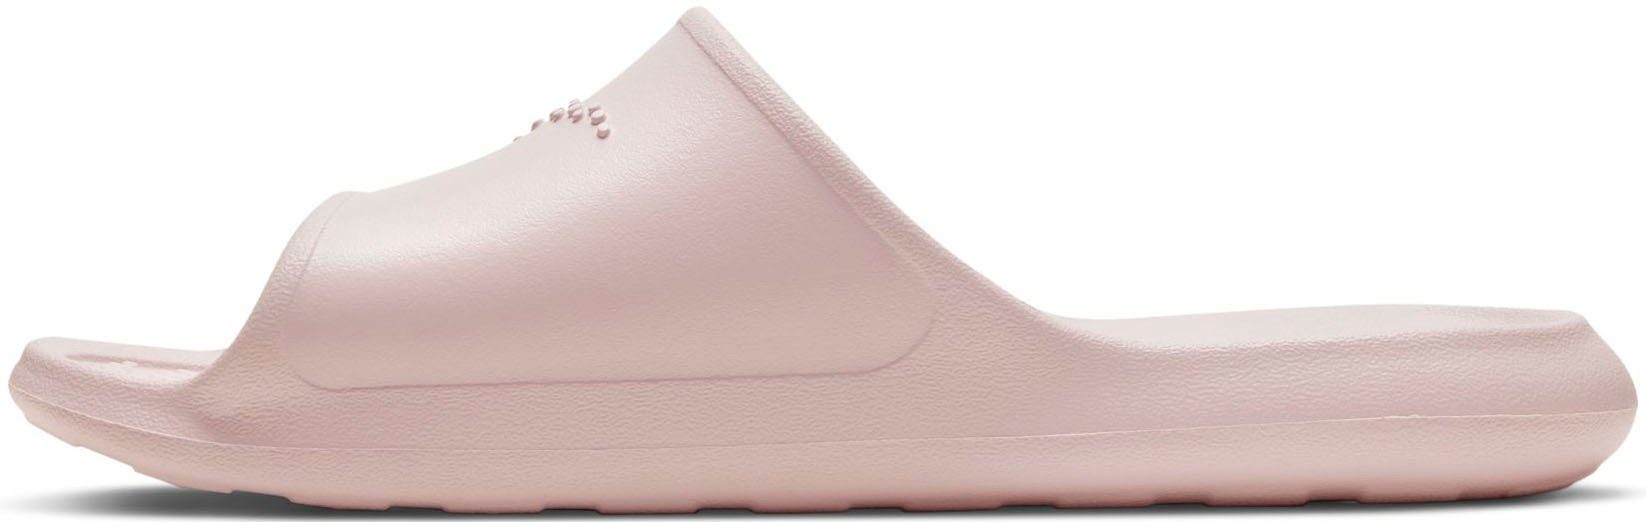 Nike Sportswear VICTORI ONE SHOWER SLIDE Badesandale rosa | 